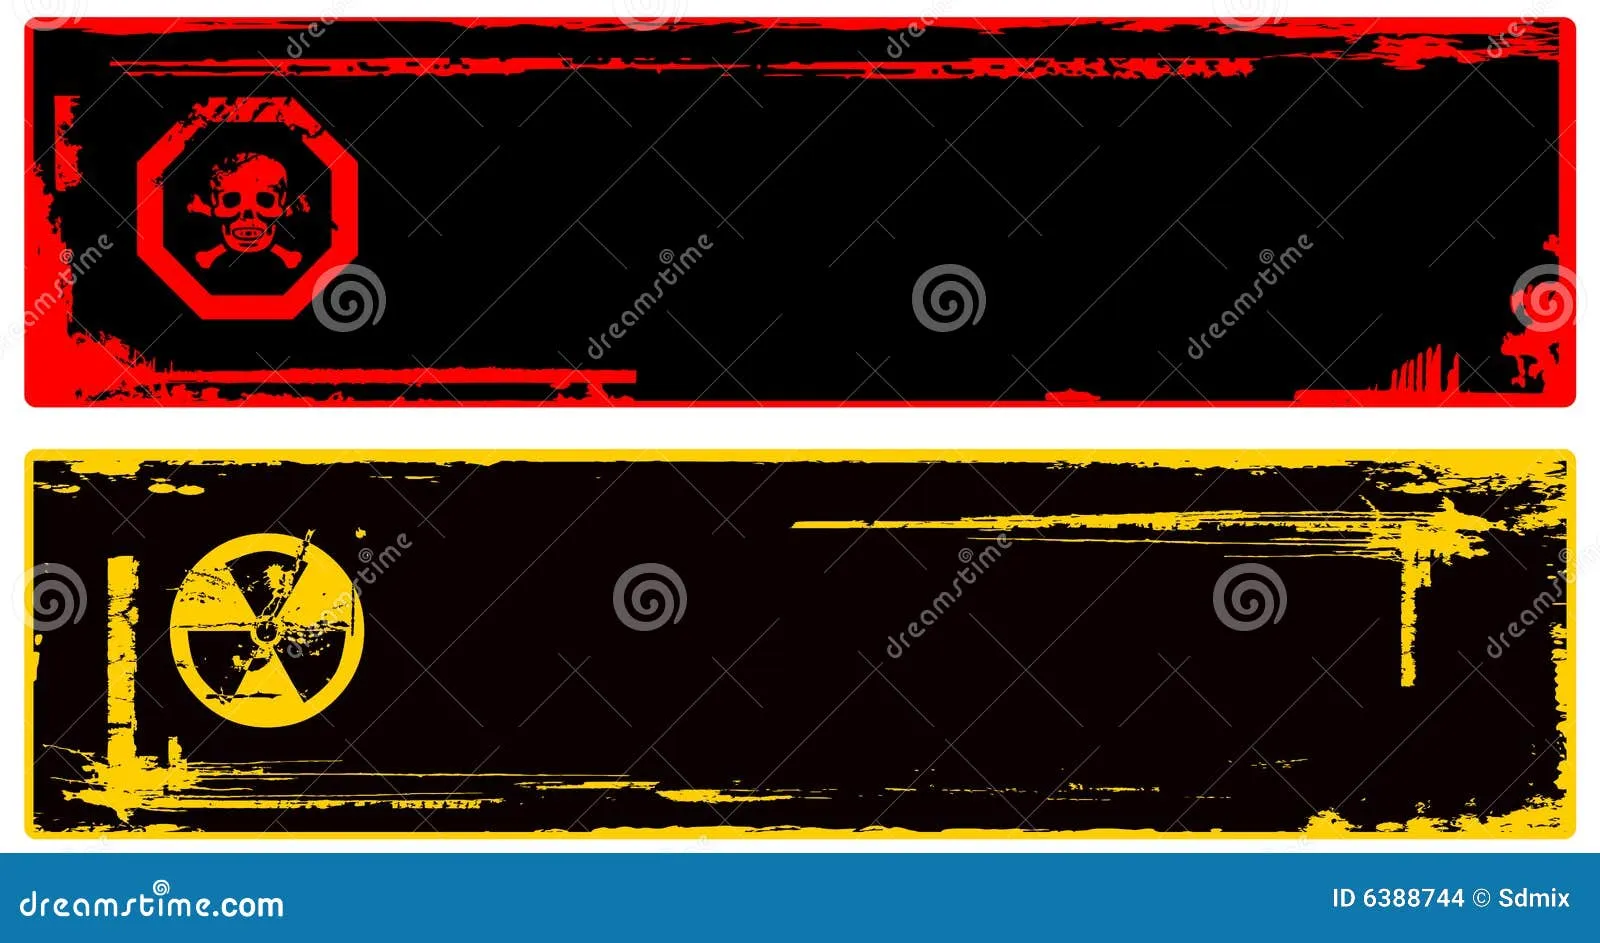 Color Grunge Danger Banner Stock Images - Image: 6388744